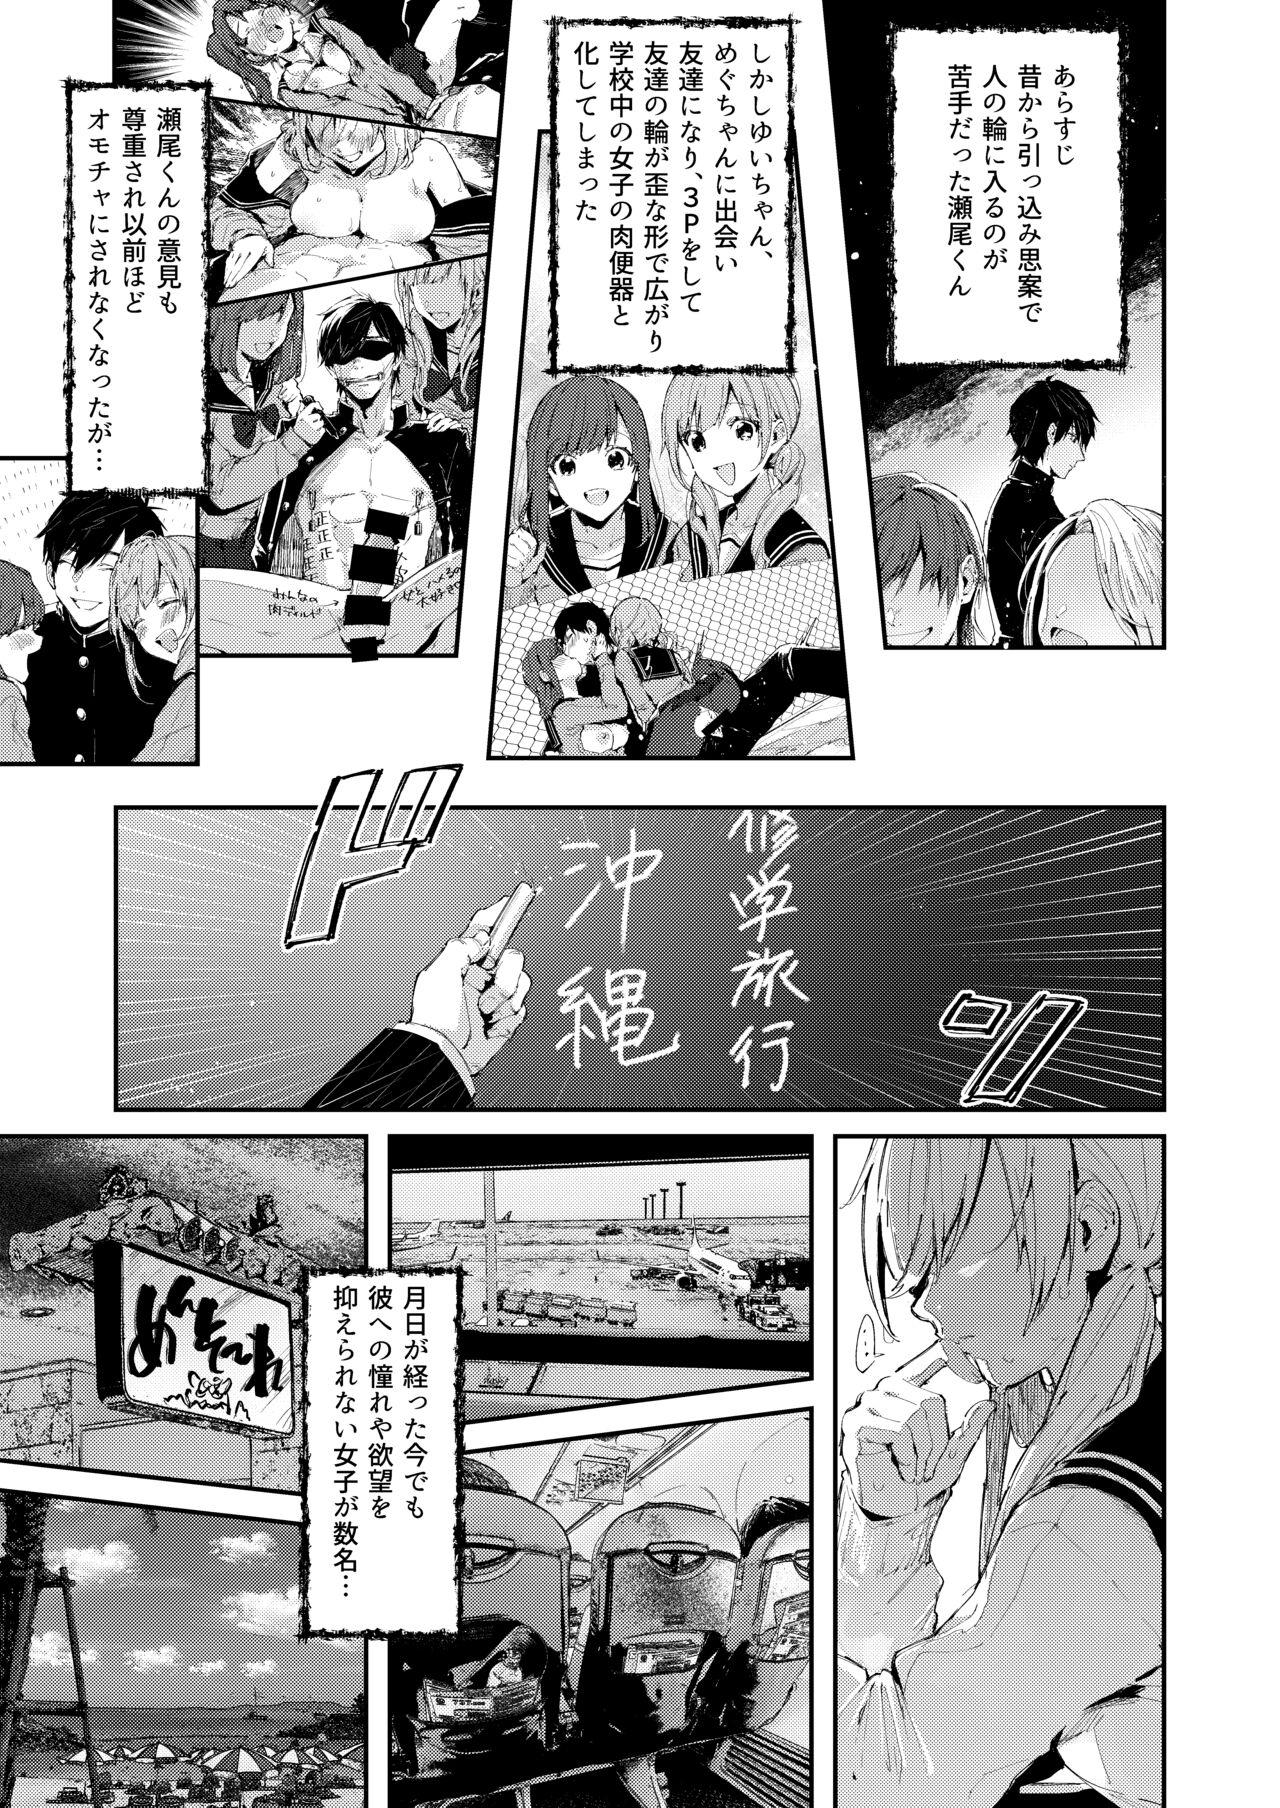 Gang サセ男の瀬尾くん〜修学旅行編〜 - Original Riding - Page 4